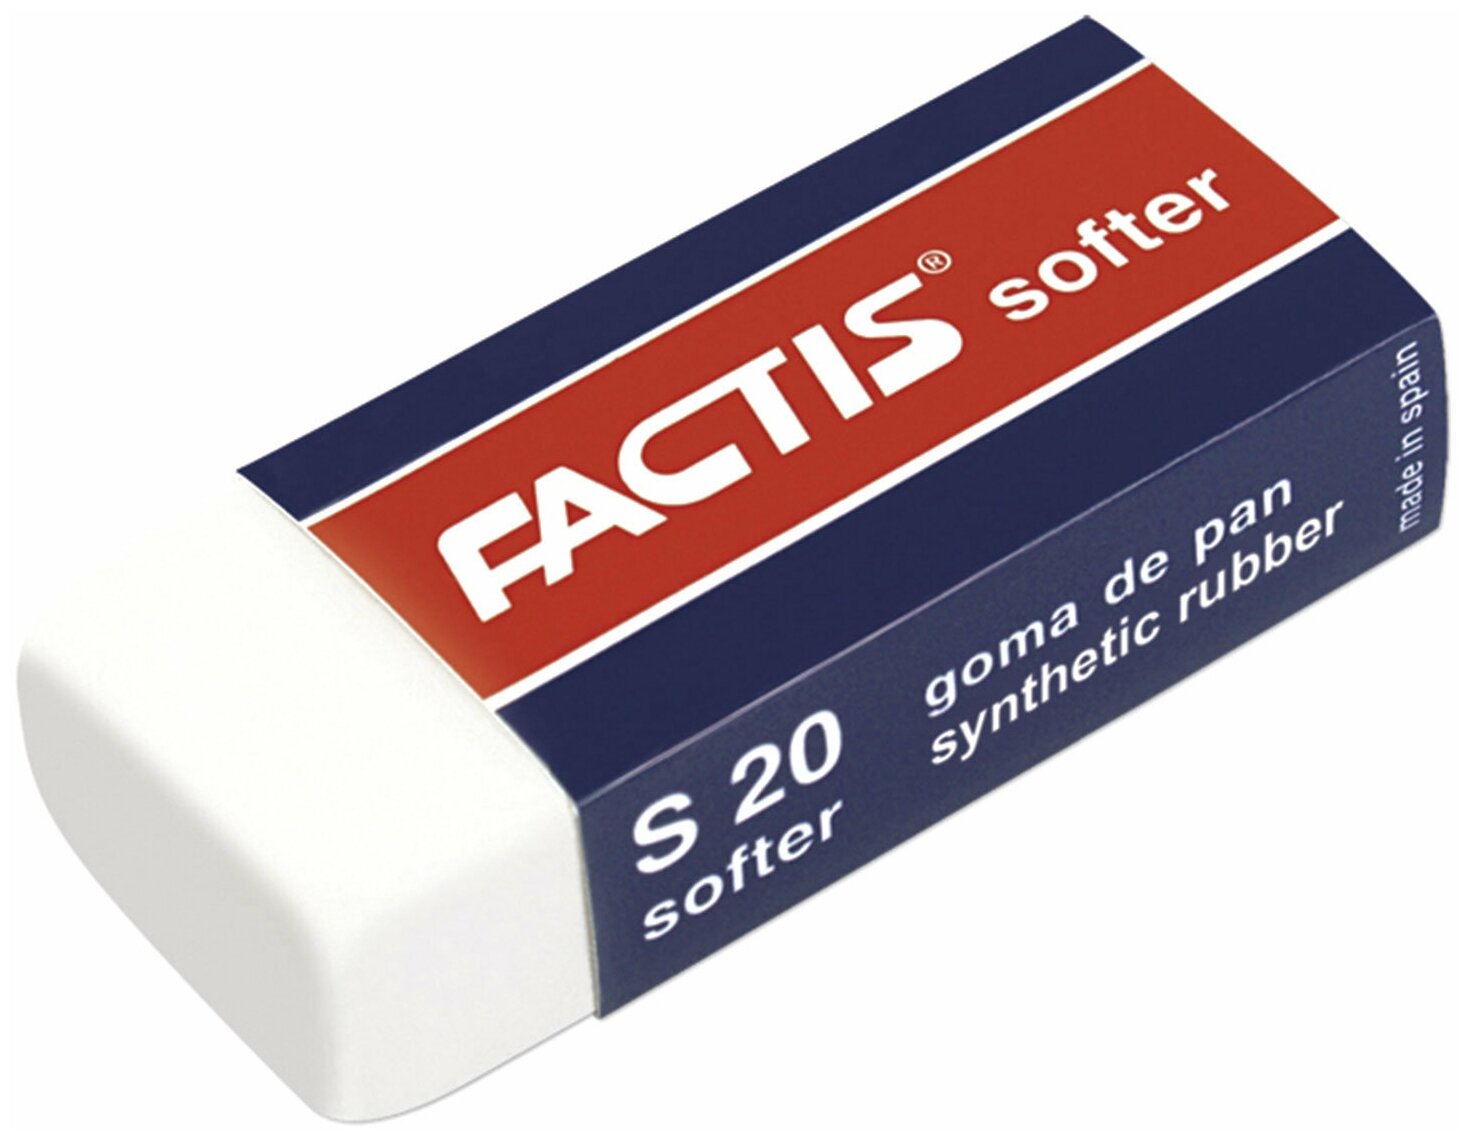 Резинка стирательная Factis Softer 56х24х14 мм, картонный держатель, синтетический каучук (CMFS20)